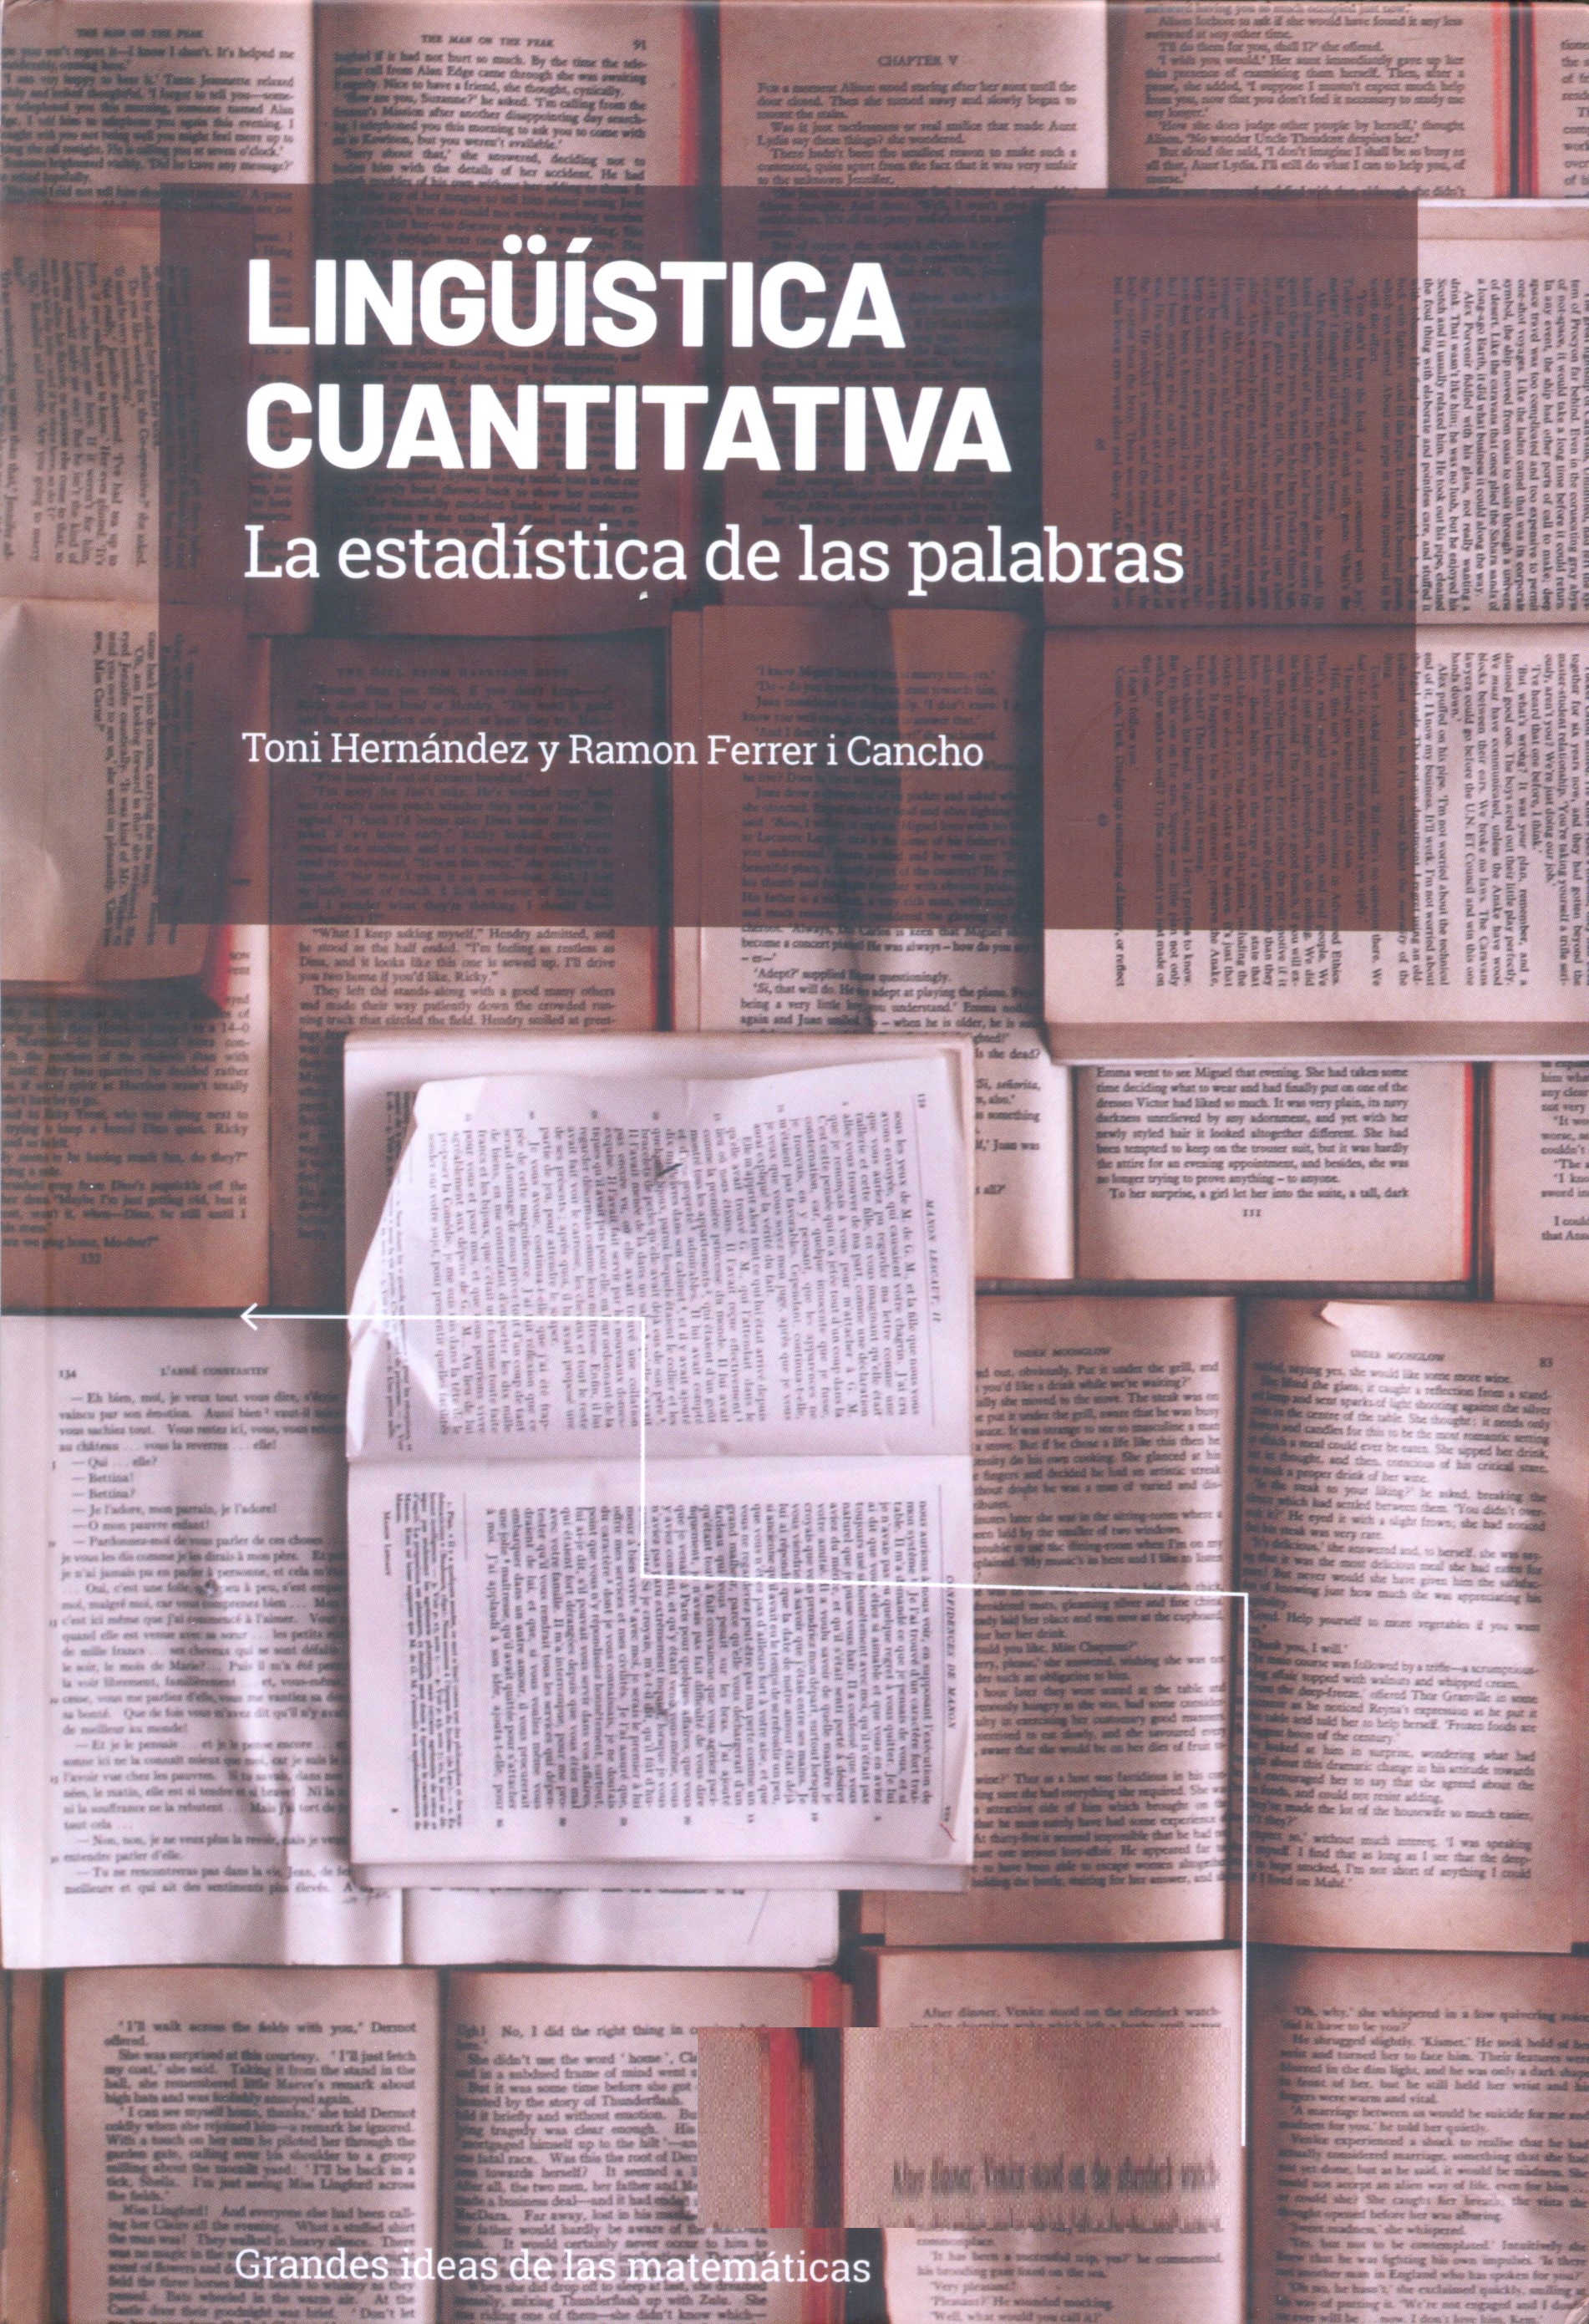 Lingüística cuantitativa : la estadística de las palabras / Toni Hernández y Ramón Ferrer i Cancho